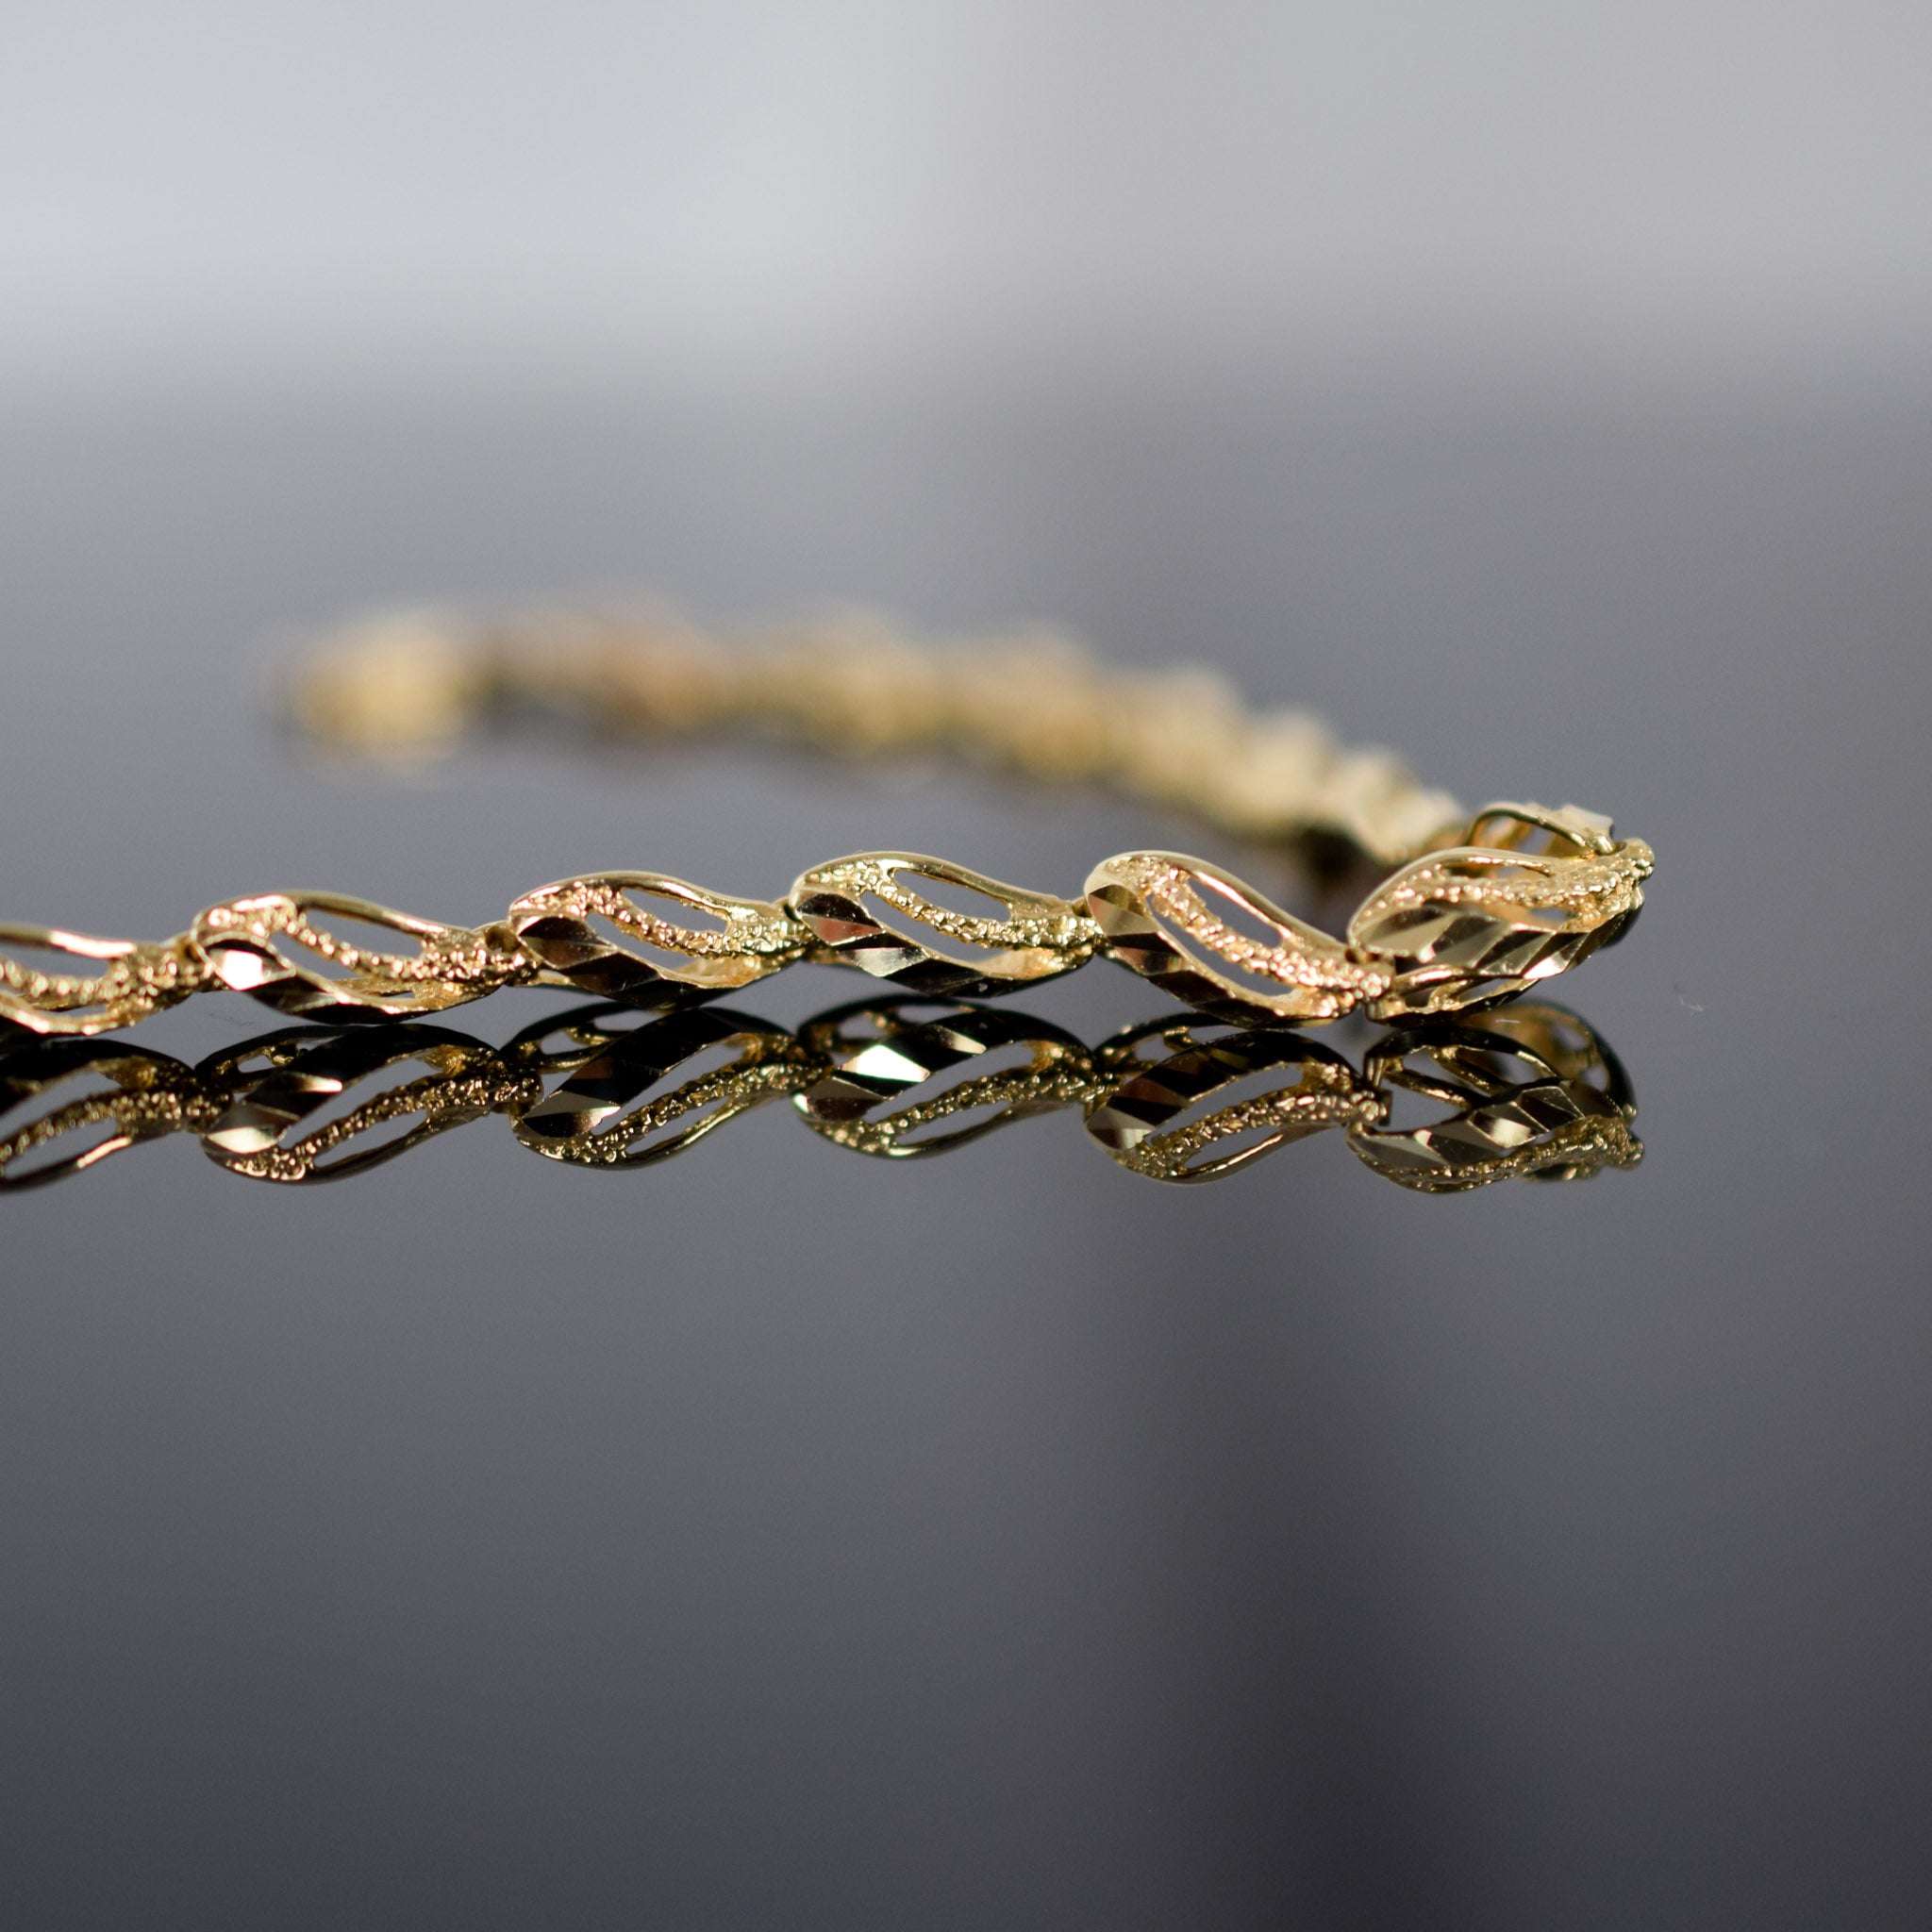 Beautiful vintage gold bracelet for sale, folklor 